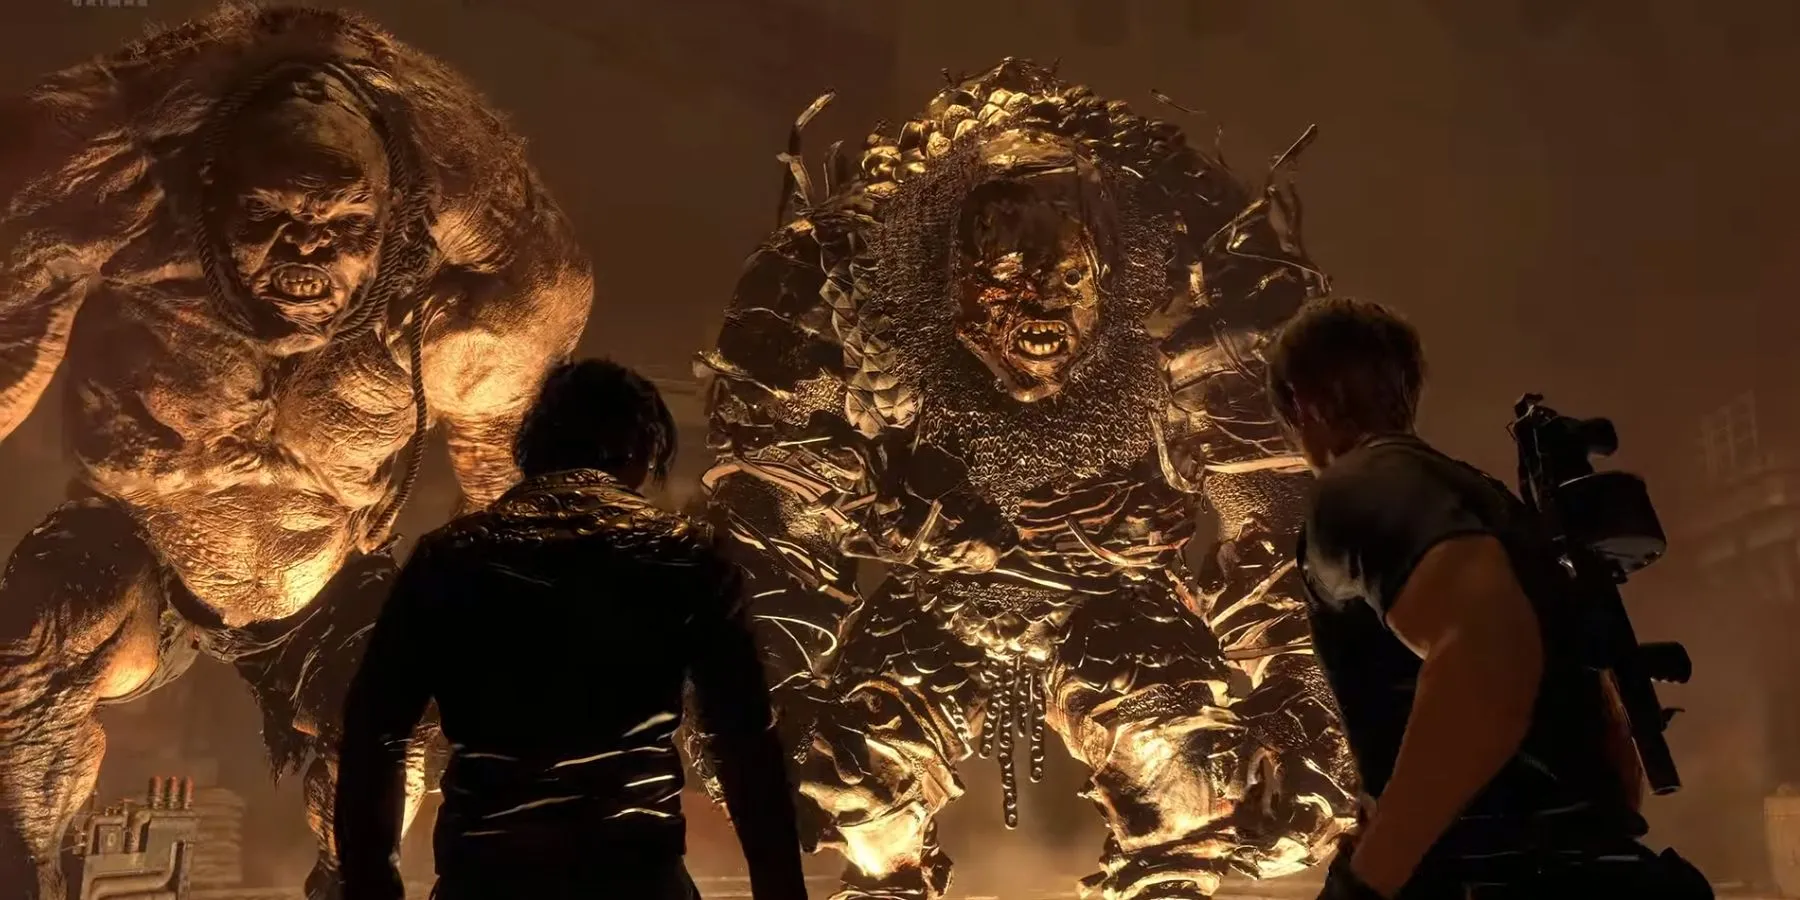 изображение с двумя гигантами (dos gigante) в римейке Resident Evil 4